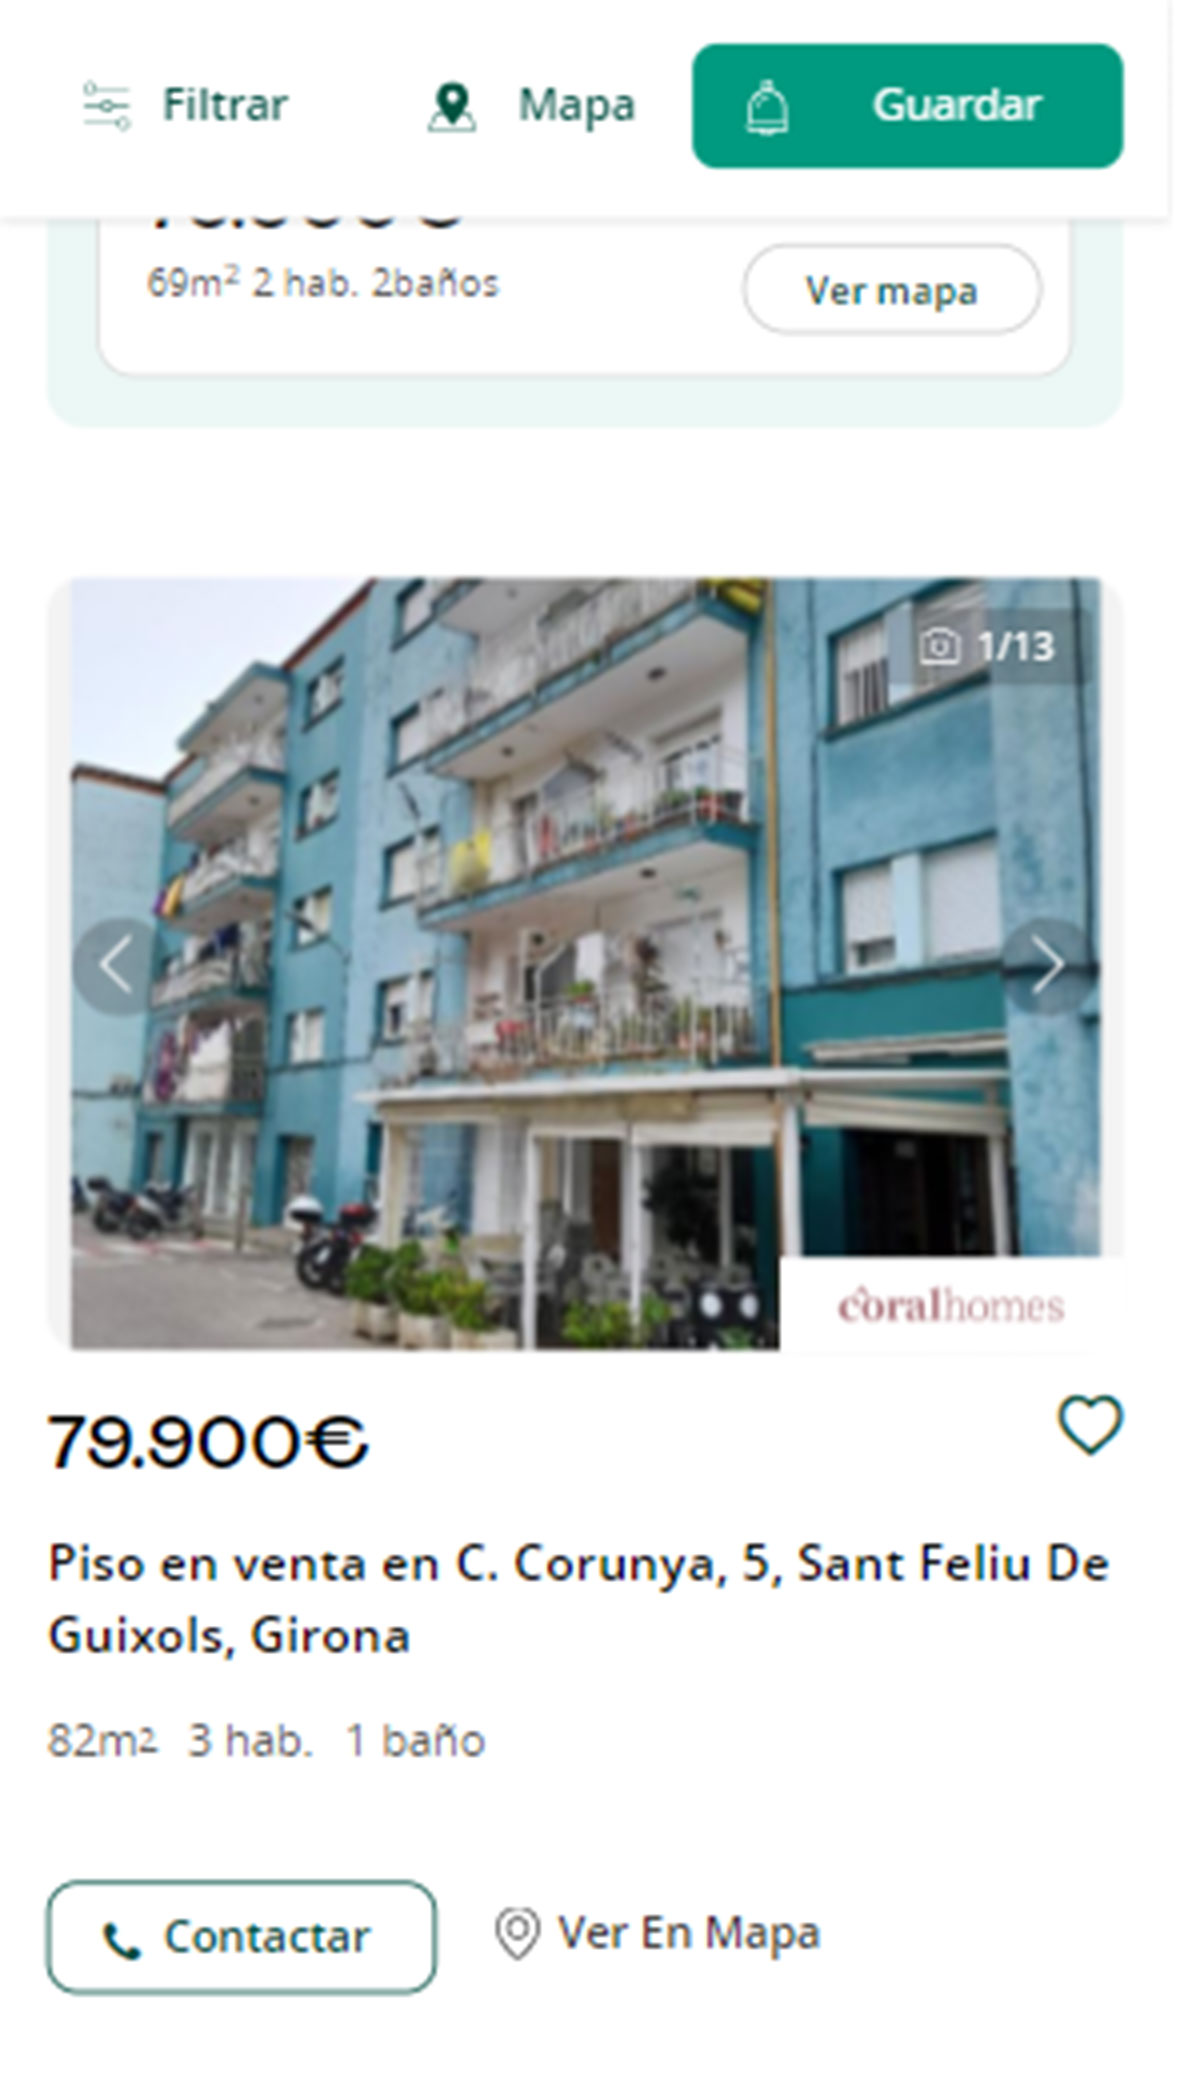 Piso en Girona por 79.000 euros